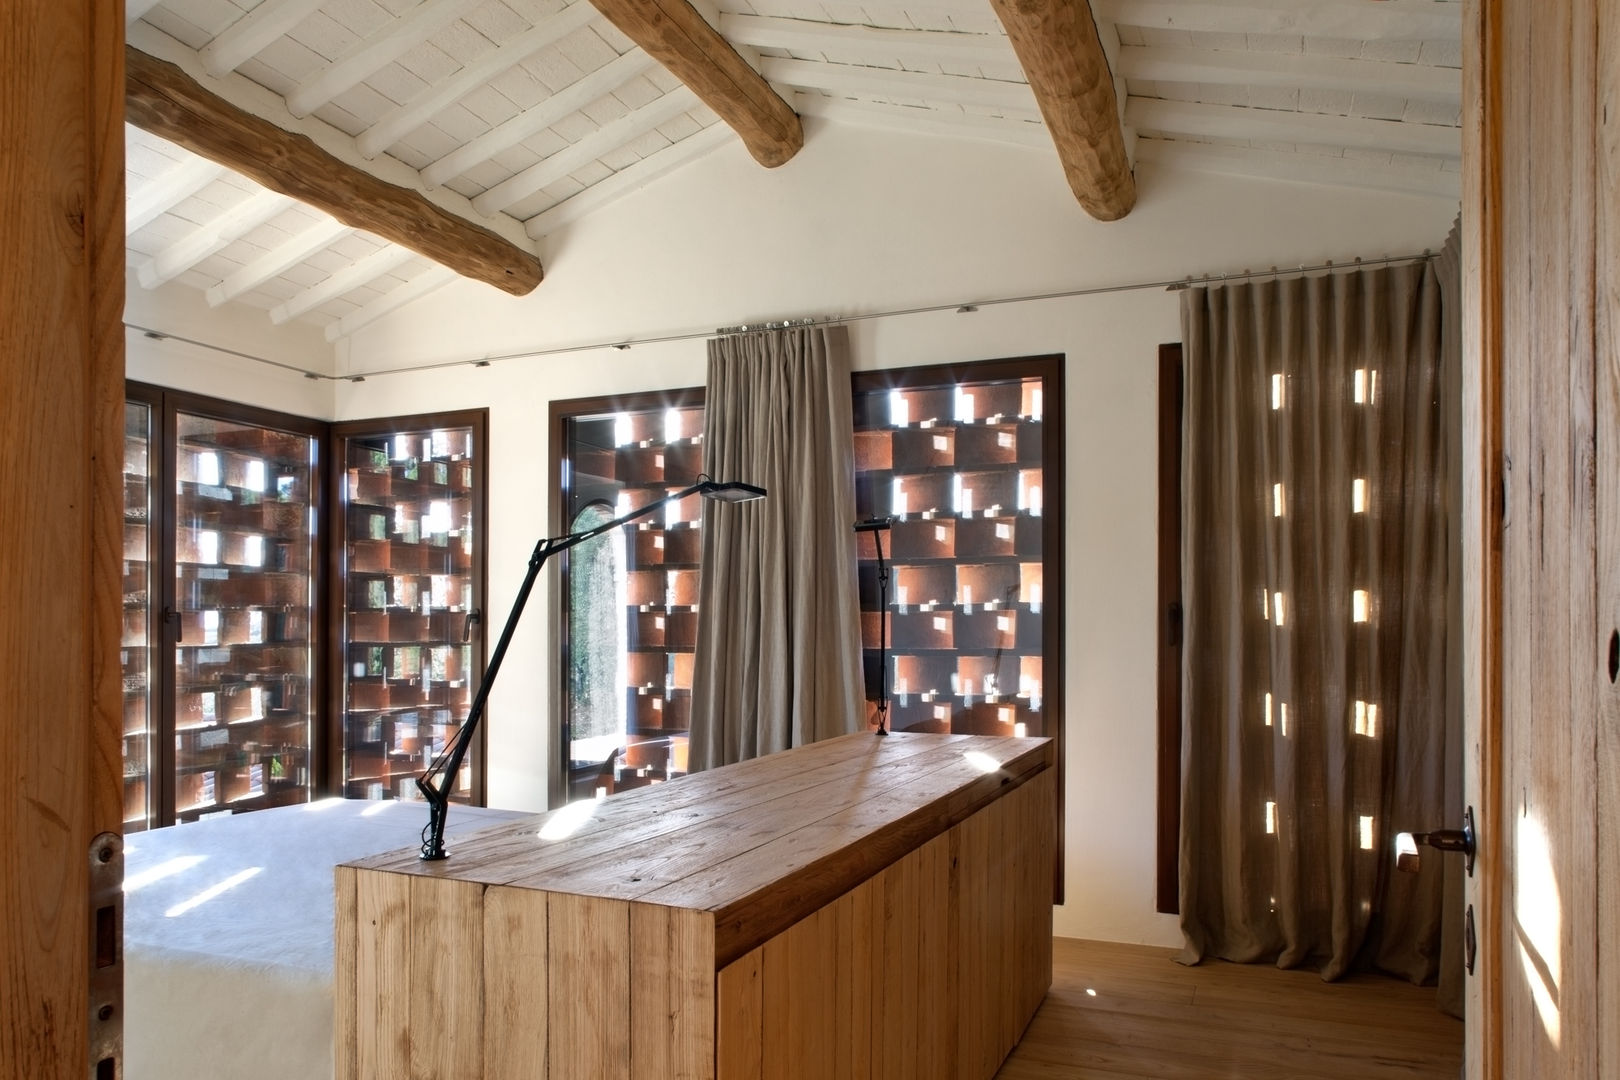 Bella casa in stile orientale: Funzionalità e Storia in un unico luogo, MIDE architetti MIDE architetti Rustic style bedroom